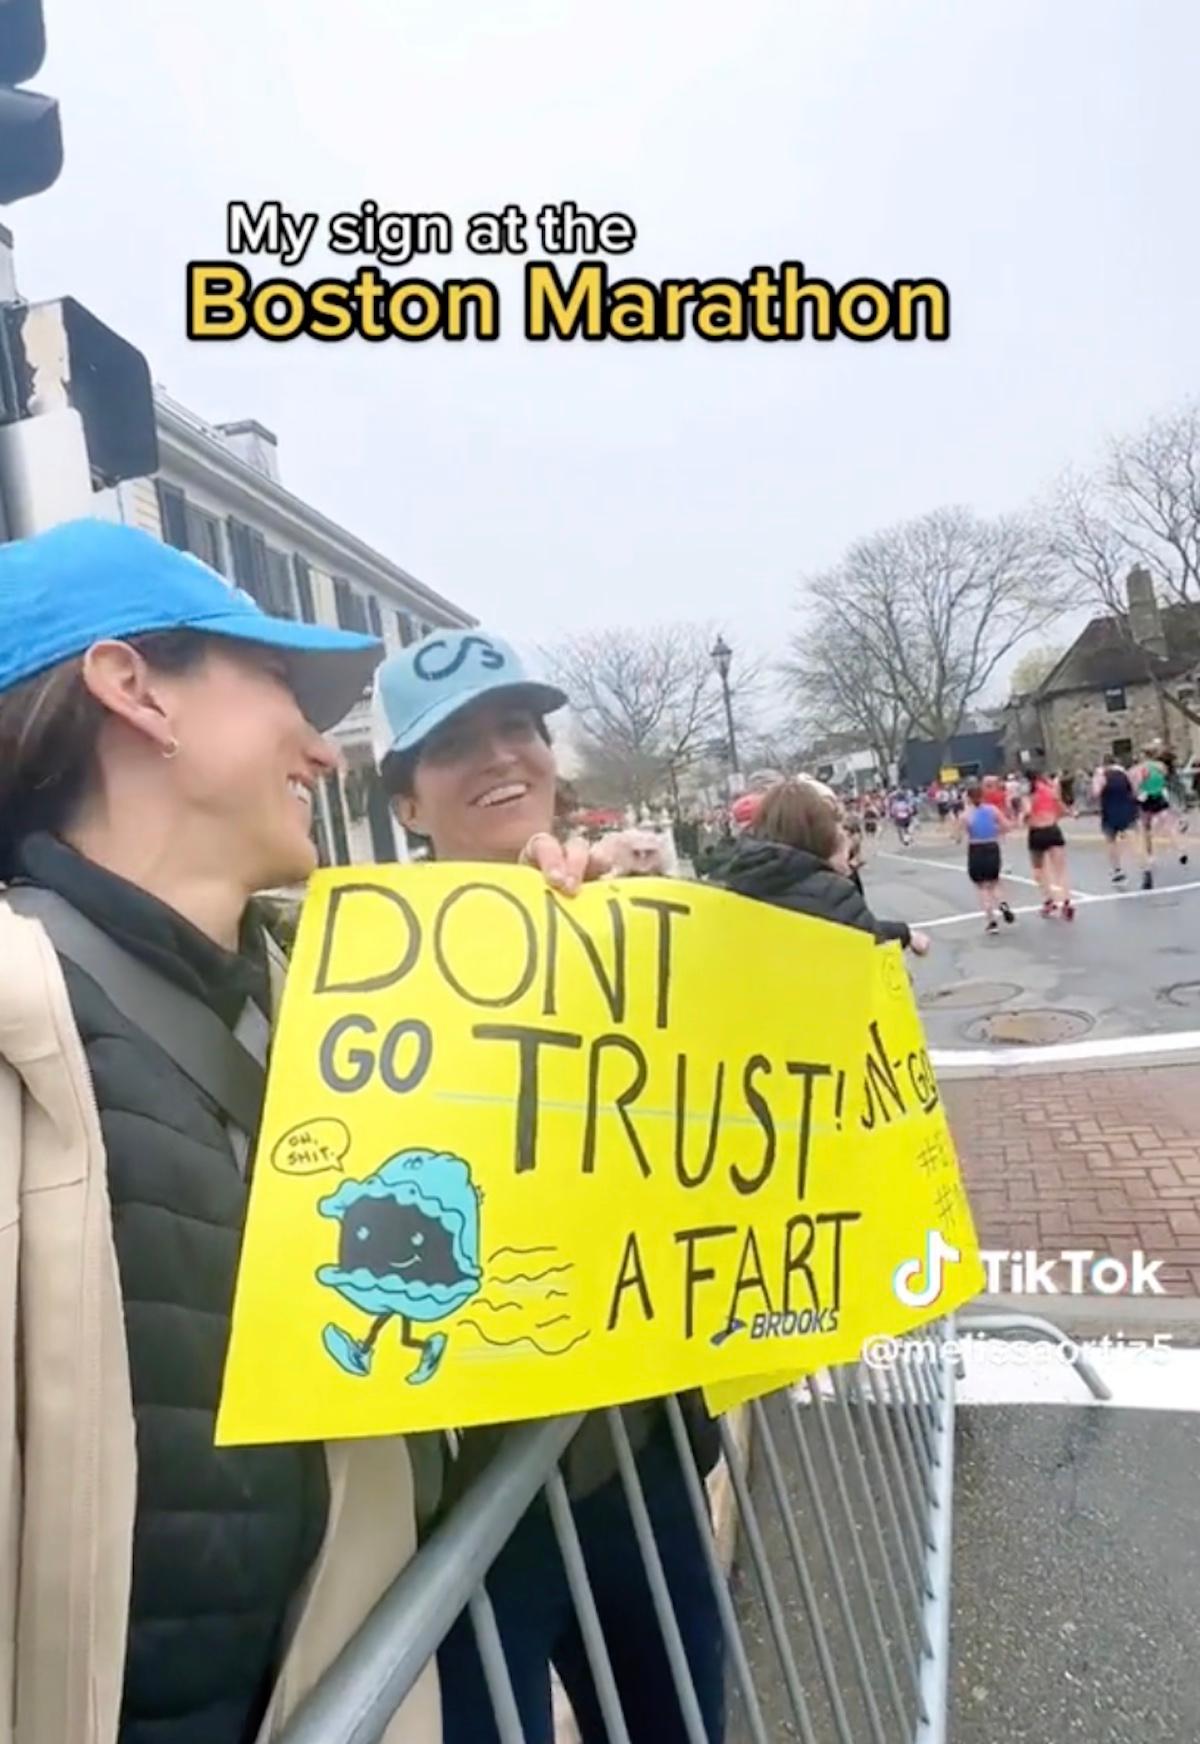 Kvinde holder et skilt, hvor der står "Stol ikke på en prut" ved et maraton